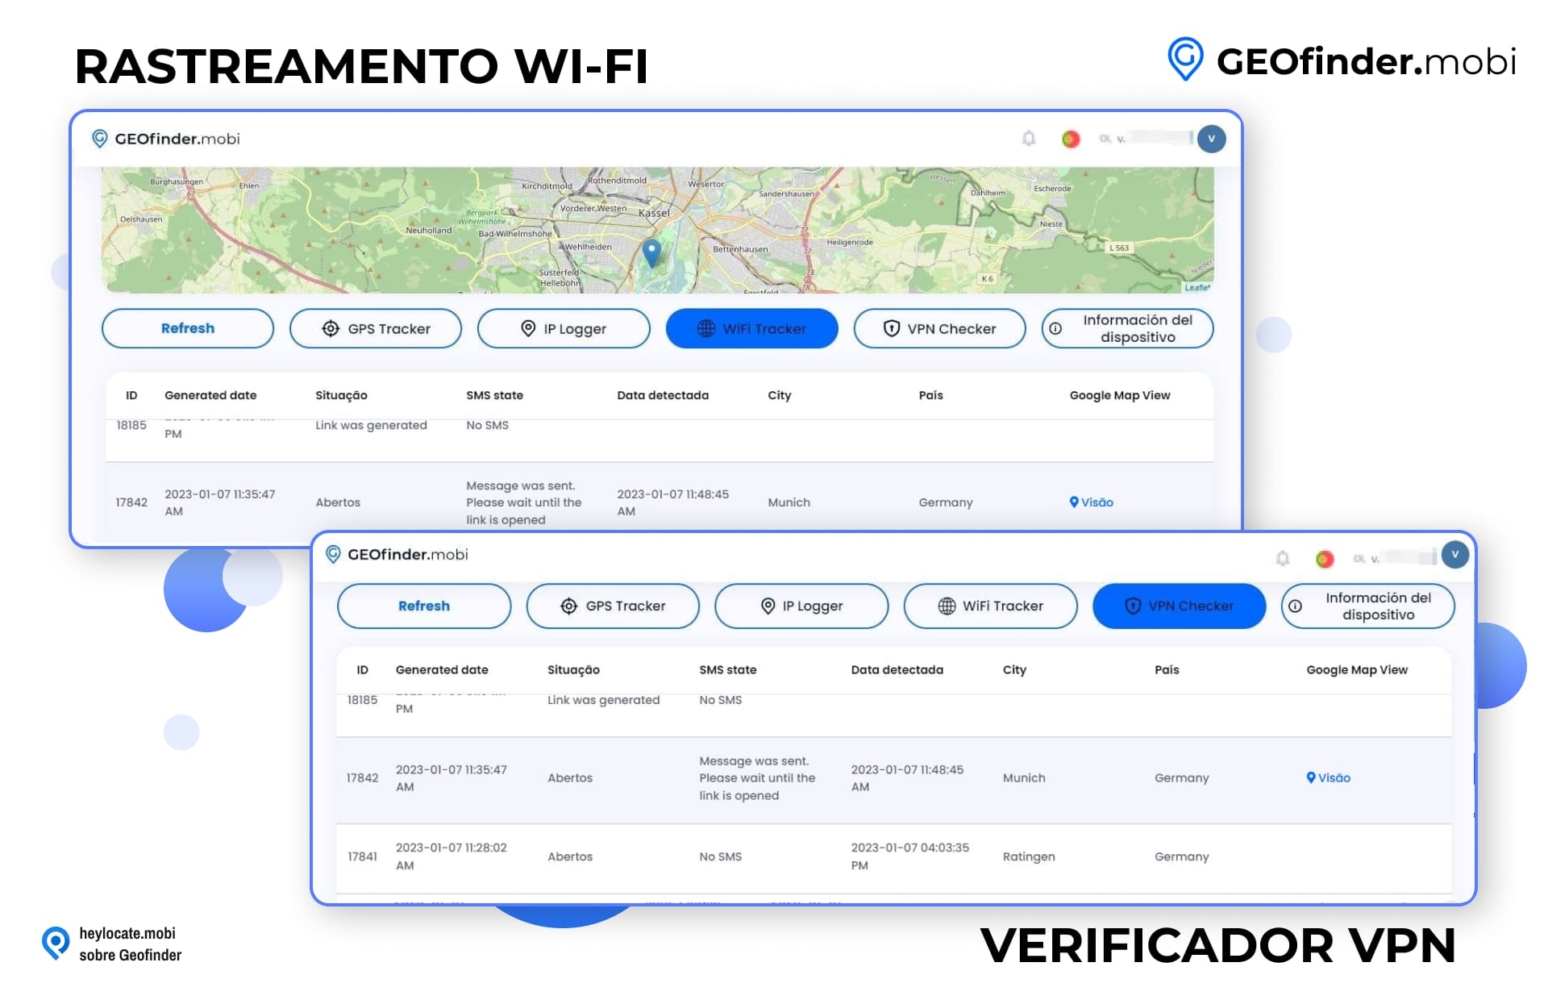 Interface do GEOfinder.mobi mostrando as guias WiFi Tracker e VPN Checker, com listagens detalhadas de números de ID, datas, estados de SMS, data de detecção e informações de rede para fins de rastreamento.